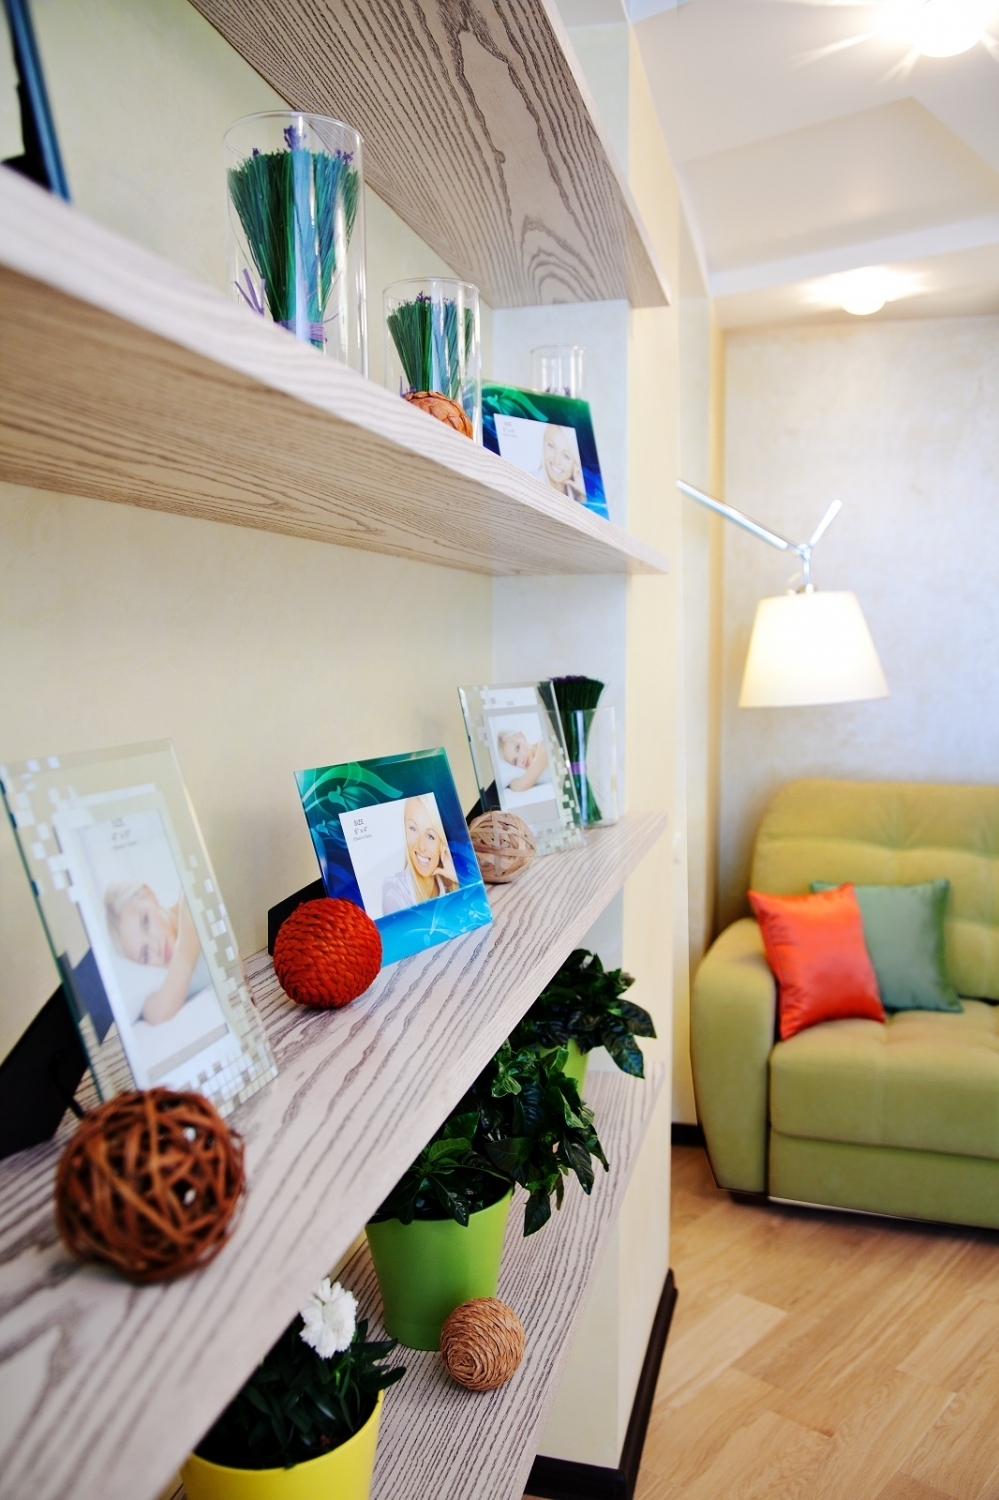 Квартира, в интерьере которой доминируют минимализм, простота и практичность